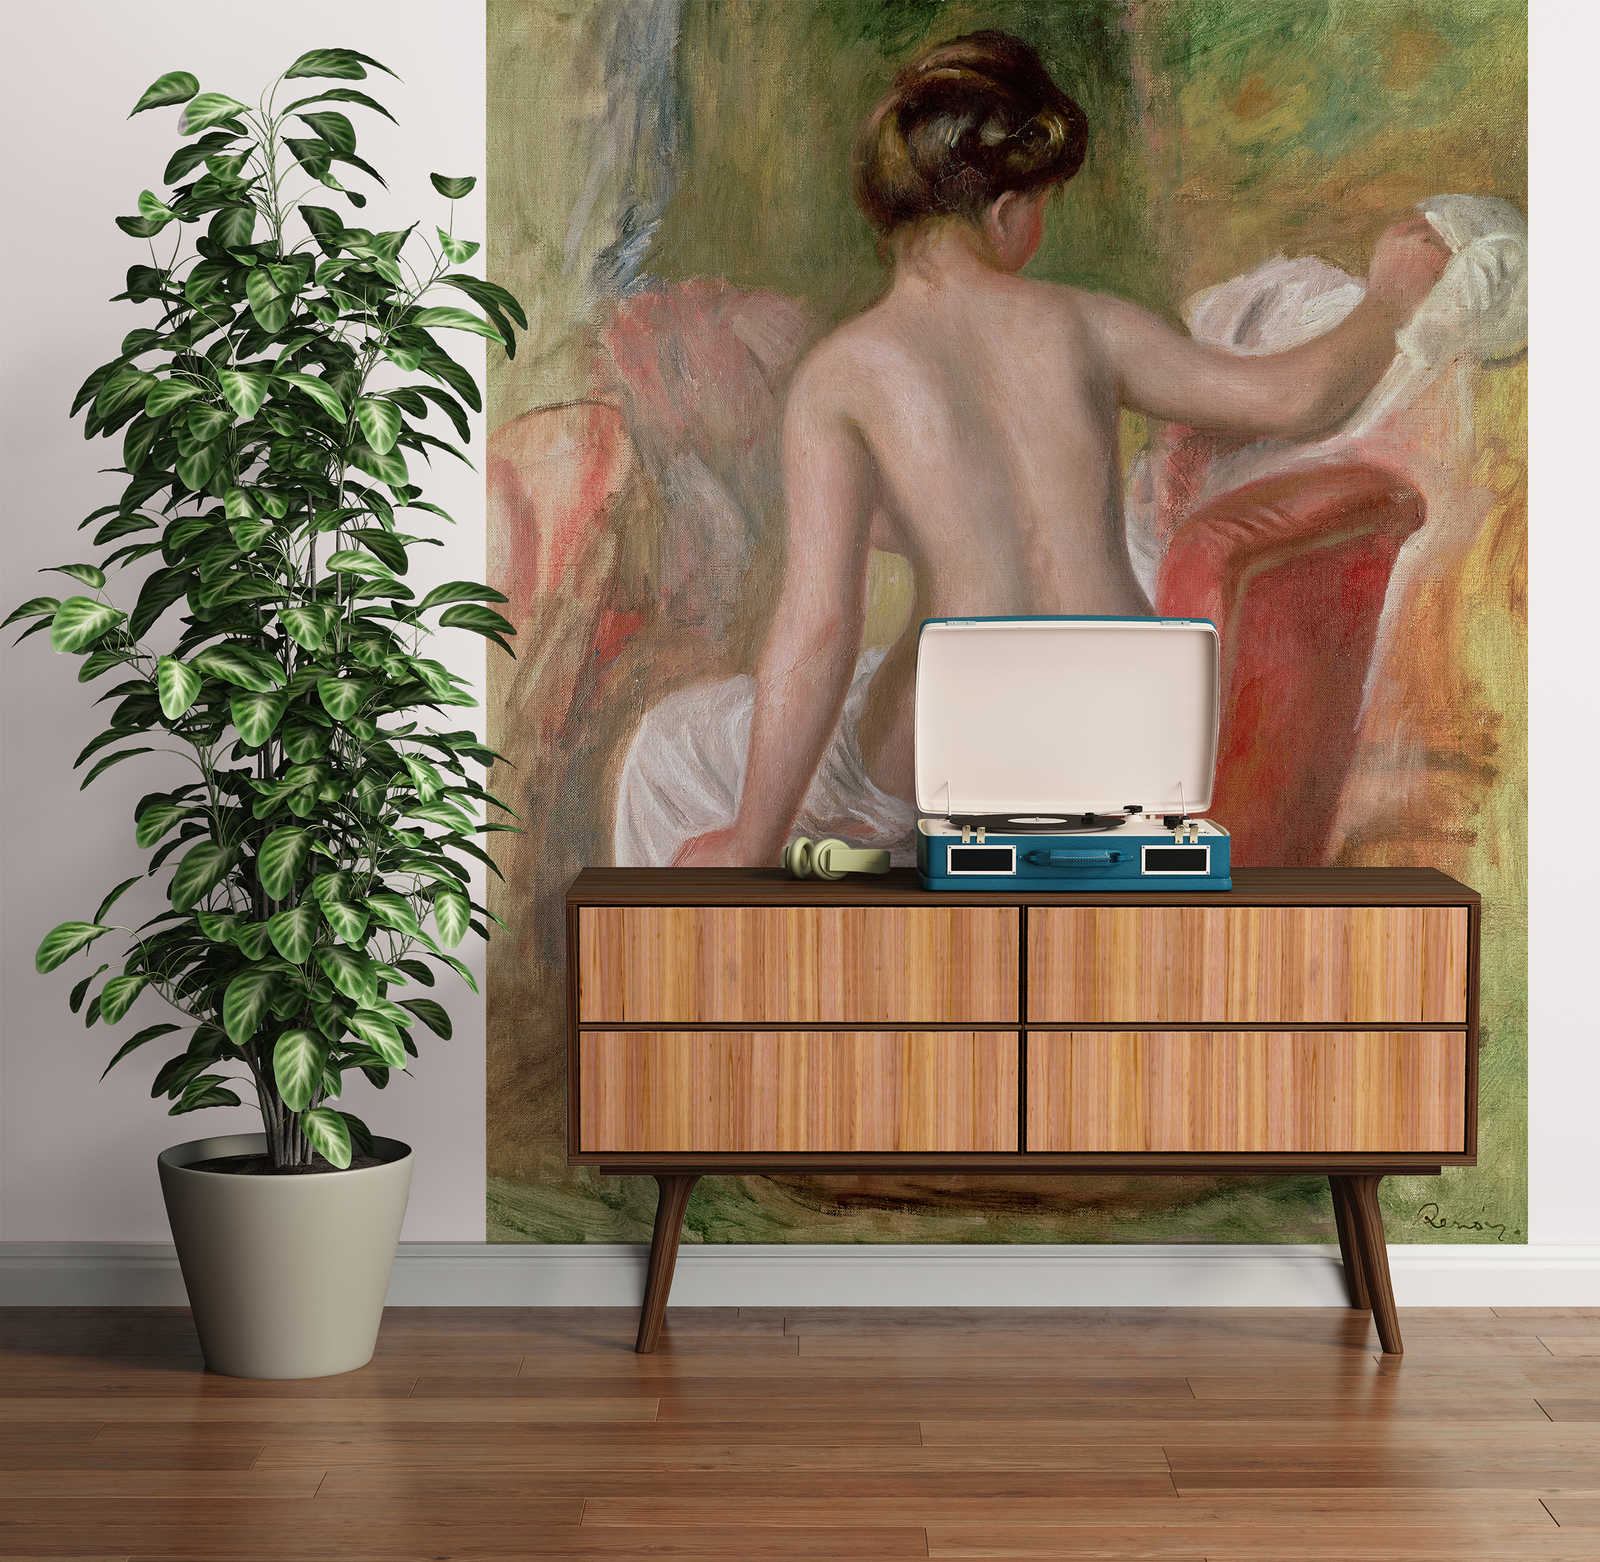             Mural "Desnudo en un sillón" de Pierre Auguste Renoir
        